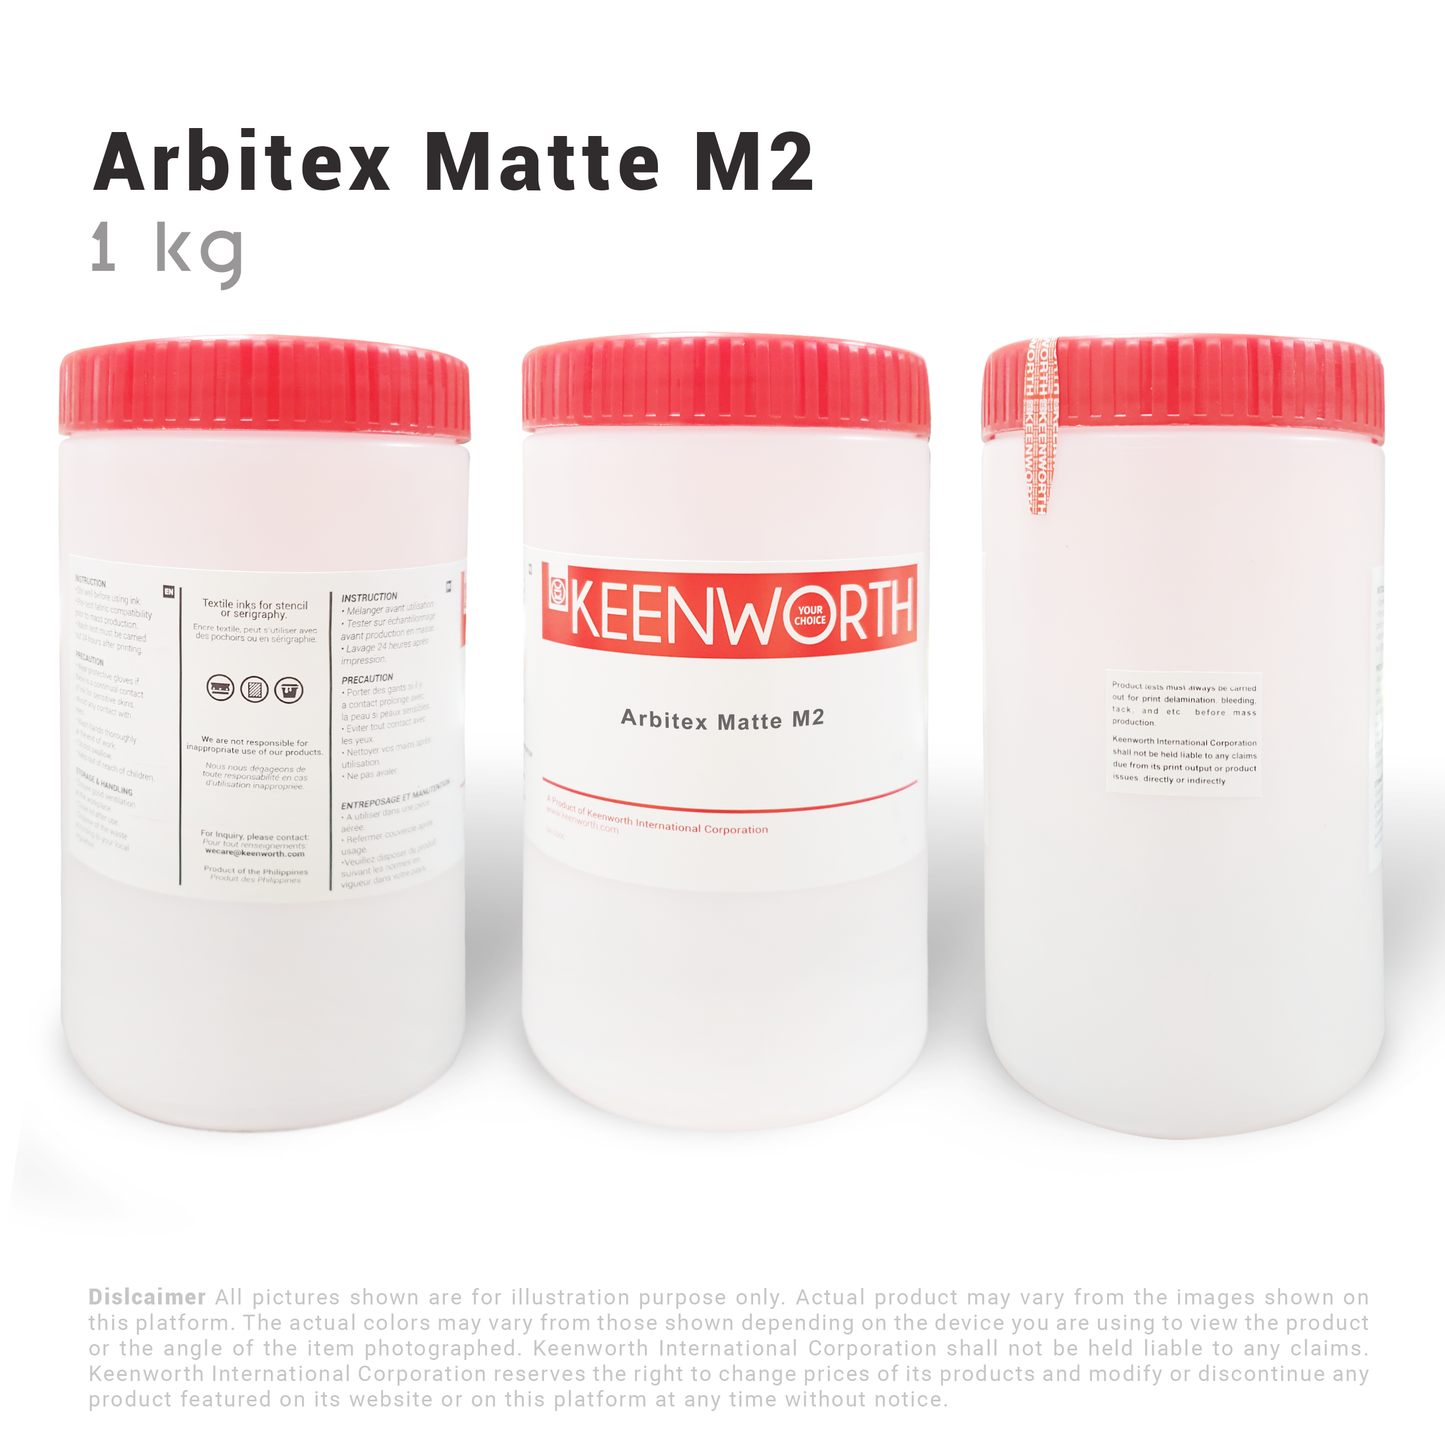 Arbitex Mat M2